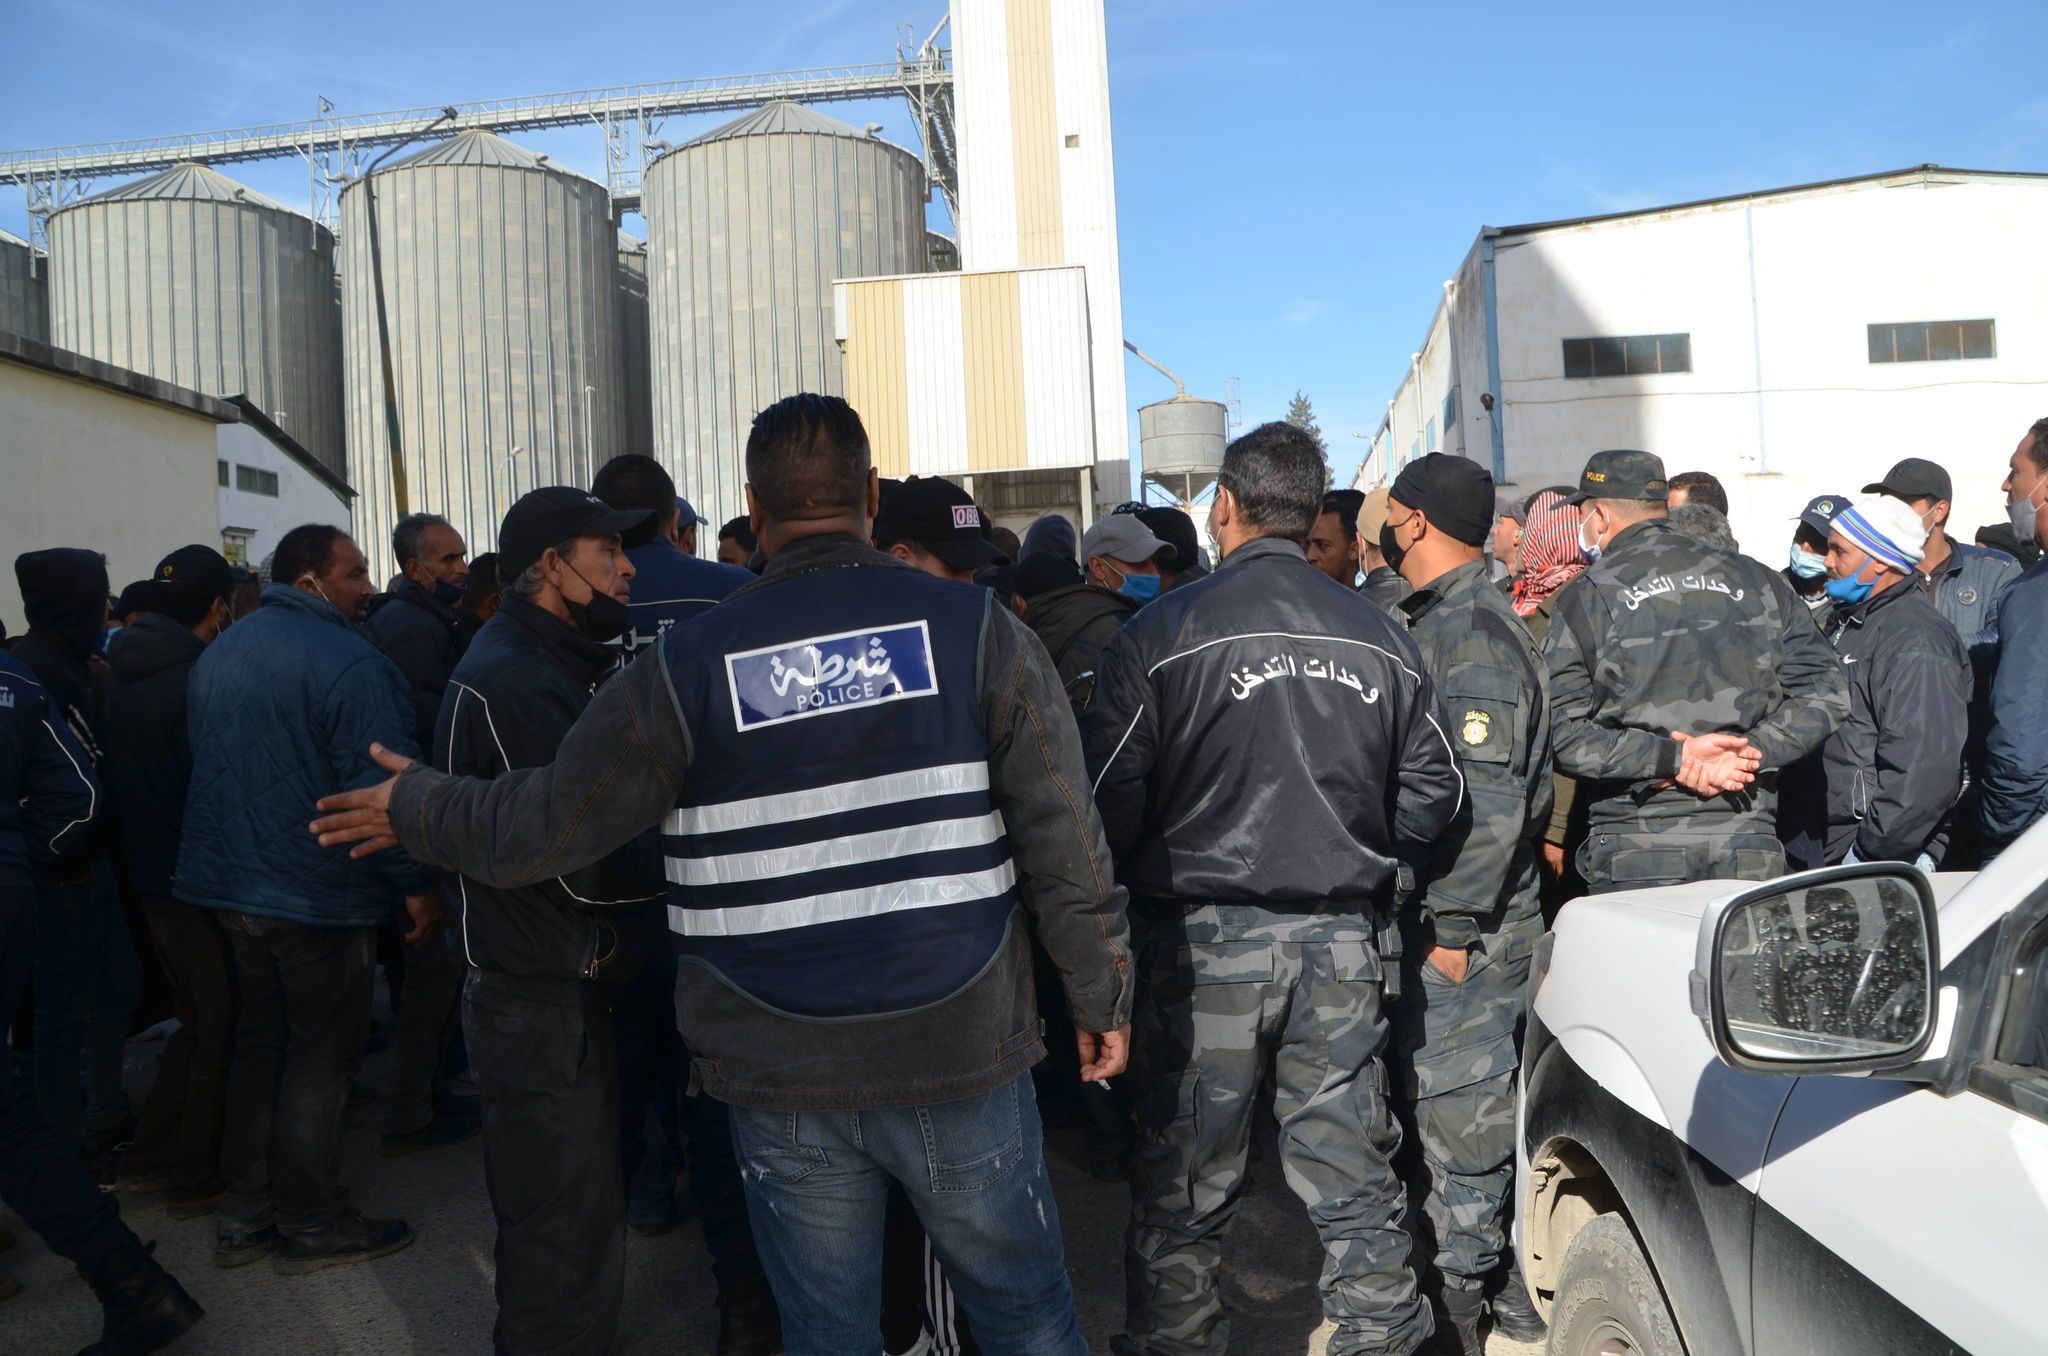 Tunisie: Hausse des prix: Des agriculteurs empêchent les camions de transporter les céréales